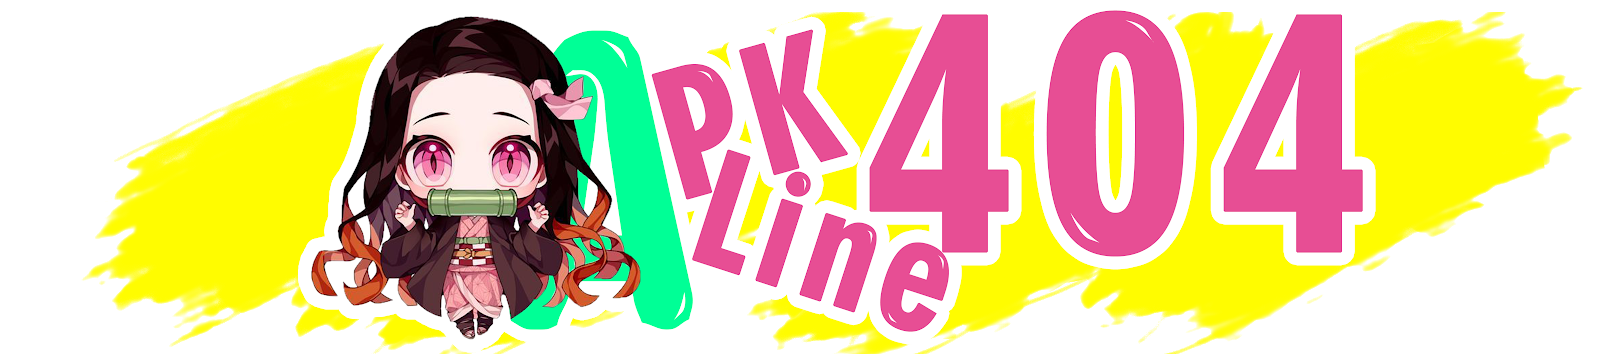 Apk Line 404